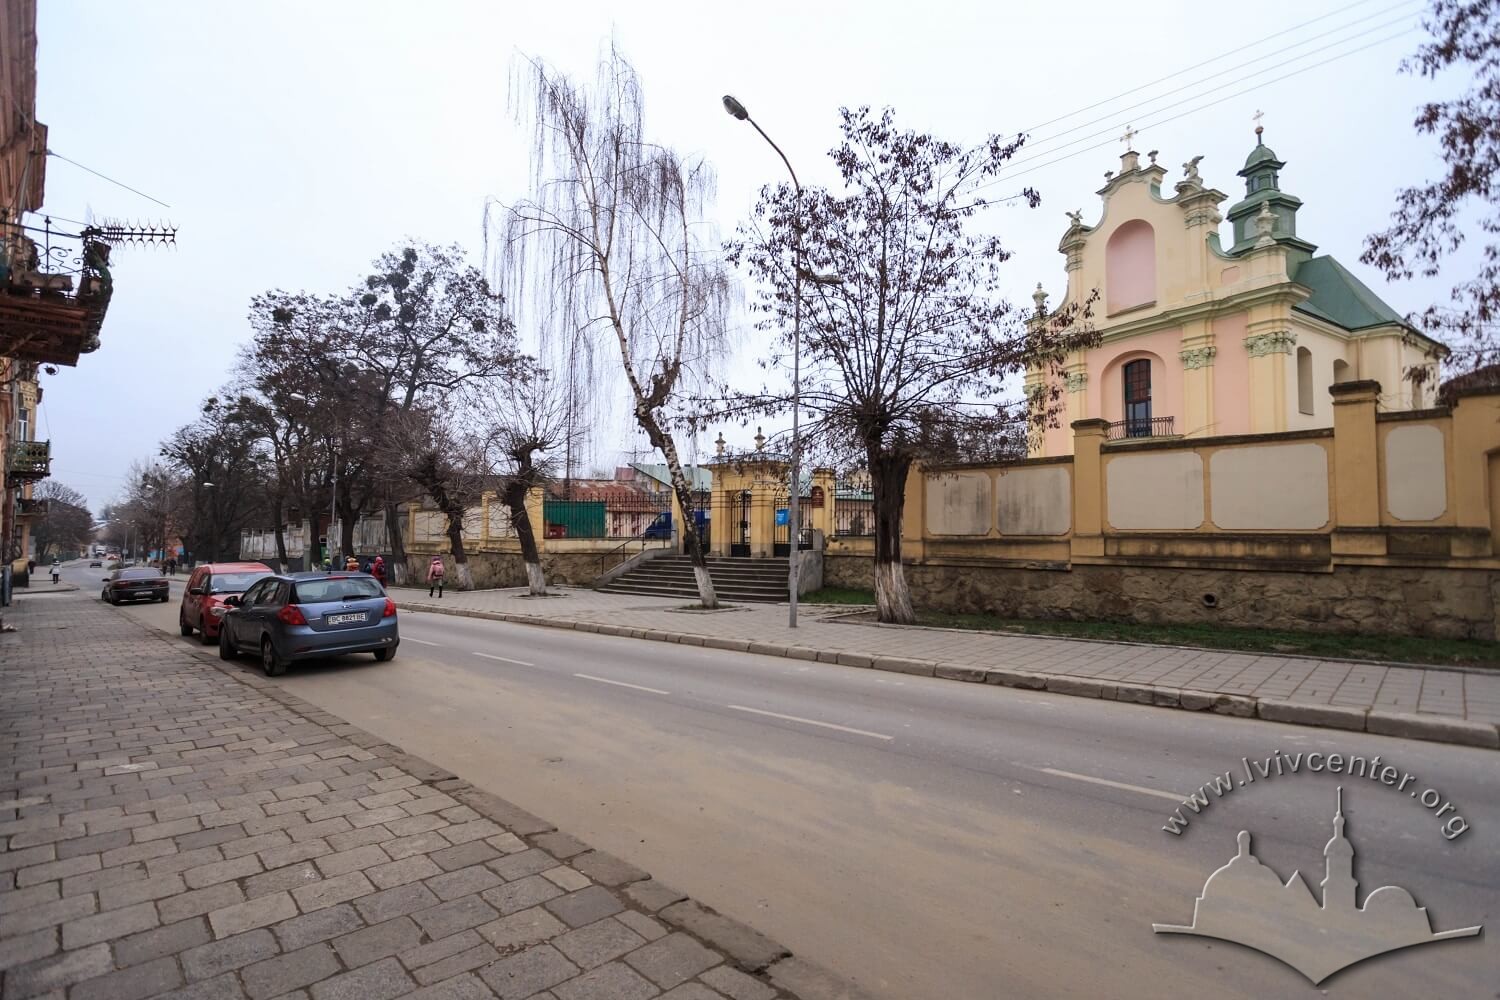 Vul. Zhovkivska, and the former church/Photo courtesy of Nazarii Parkhomyk, 2015